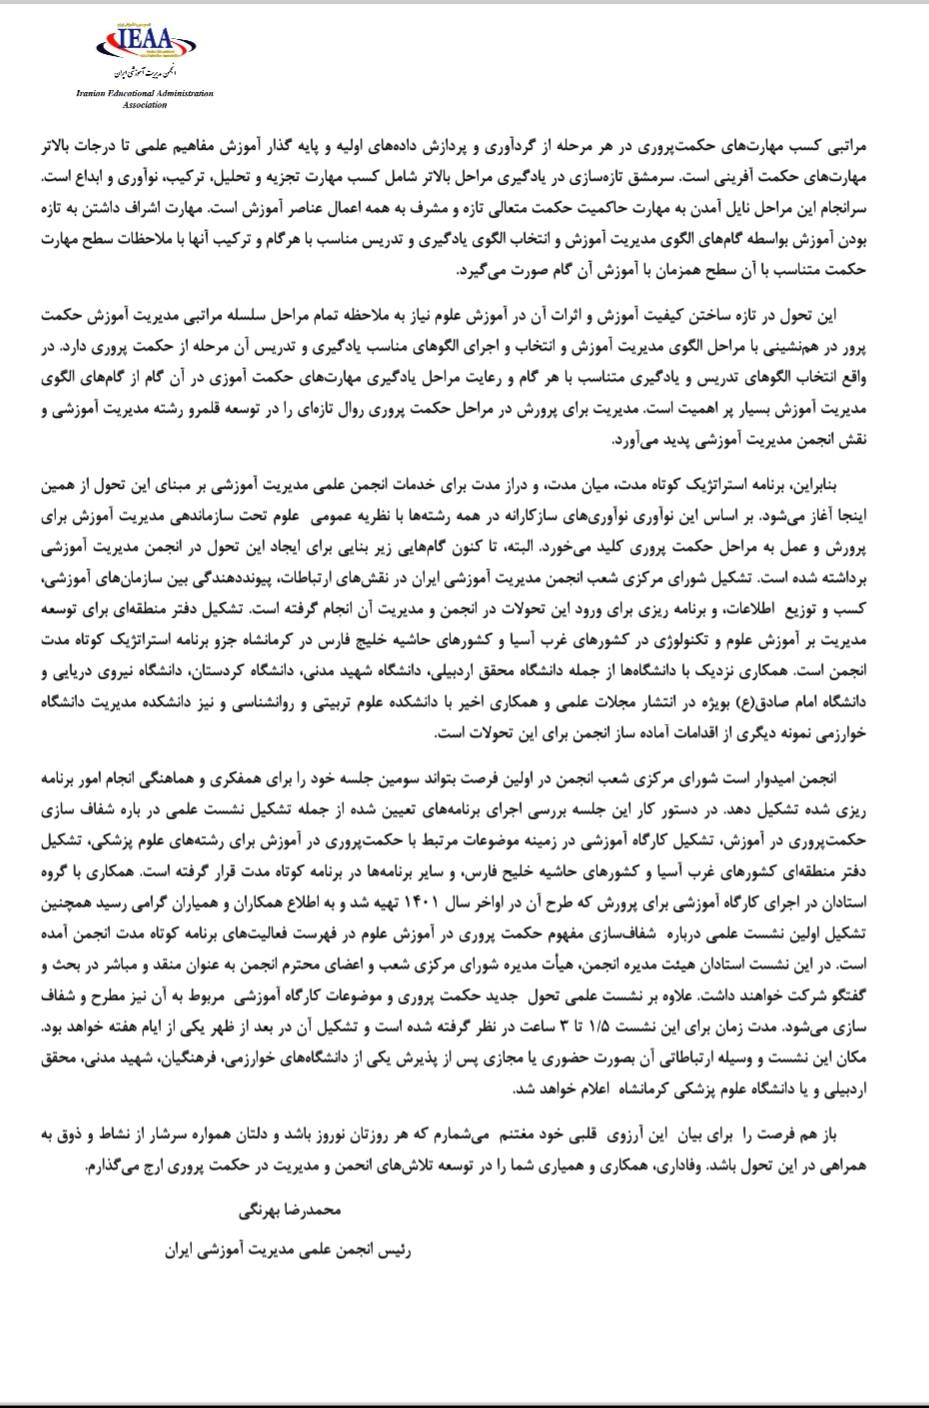  پیام تبریک سال ۱۴۰۲ از سوی رئیس محترم انجمن علمی مديريت آموزشی ایران (جناب پروفسور محمدرضا بهرنگی) در دو صفحه 